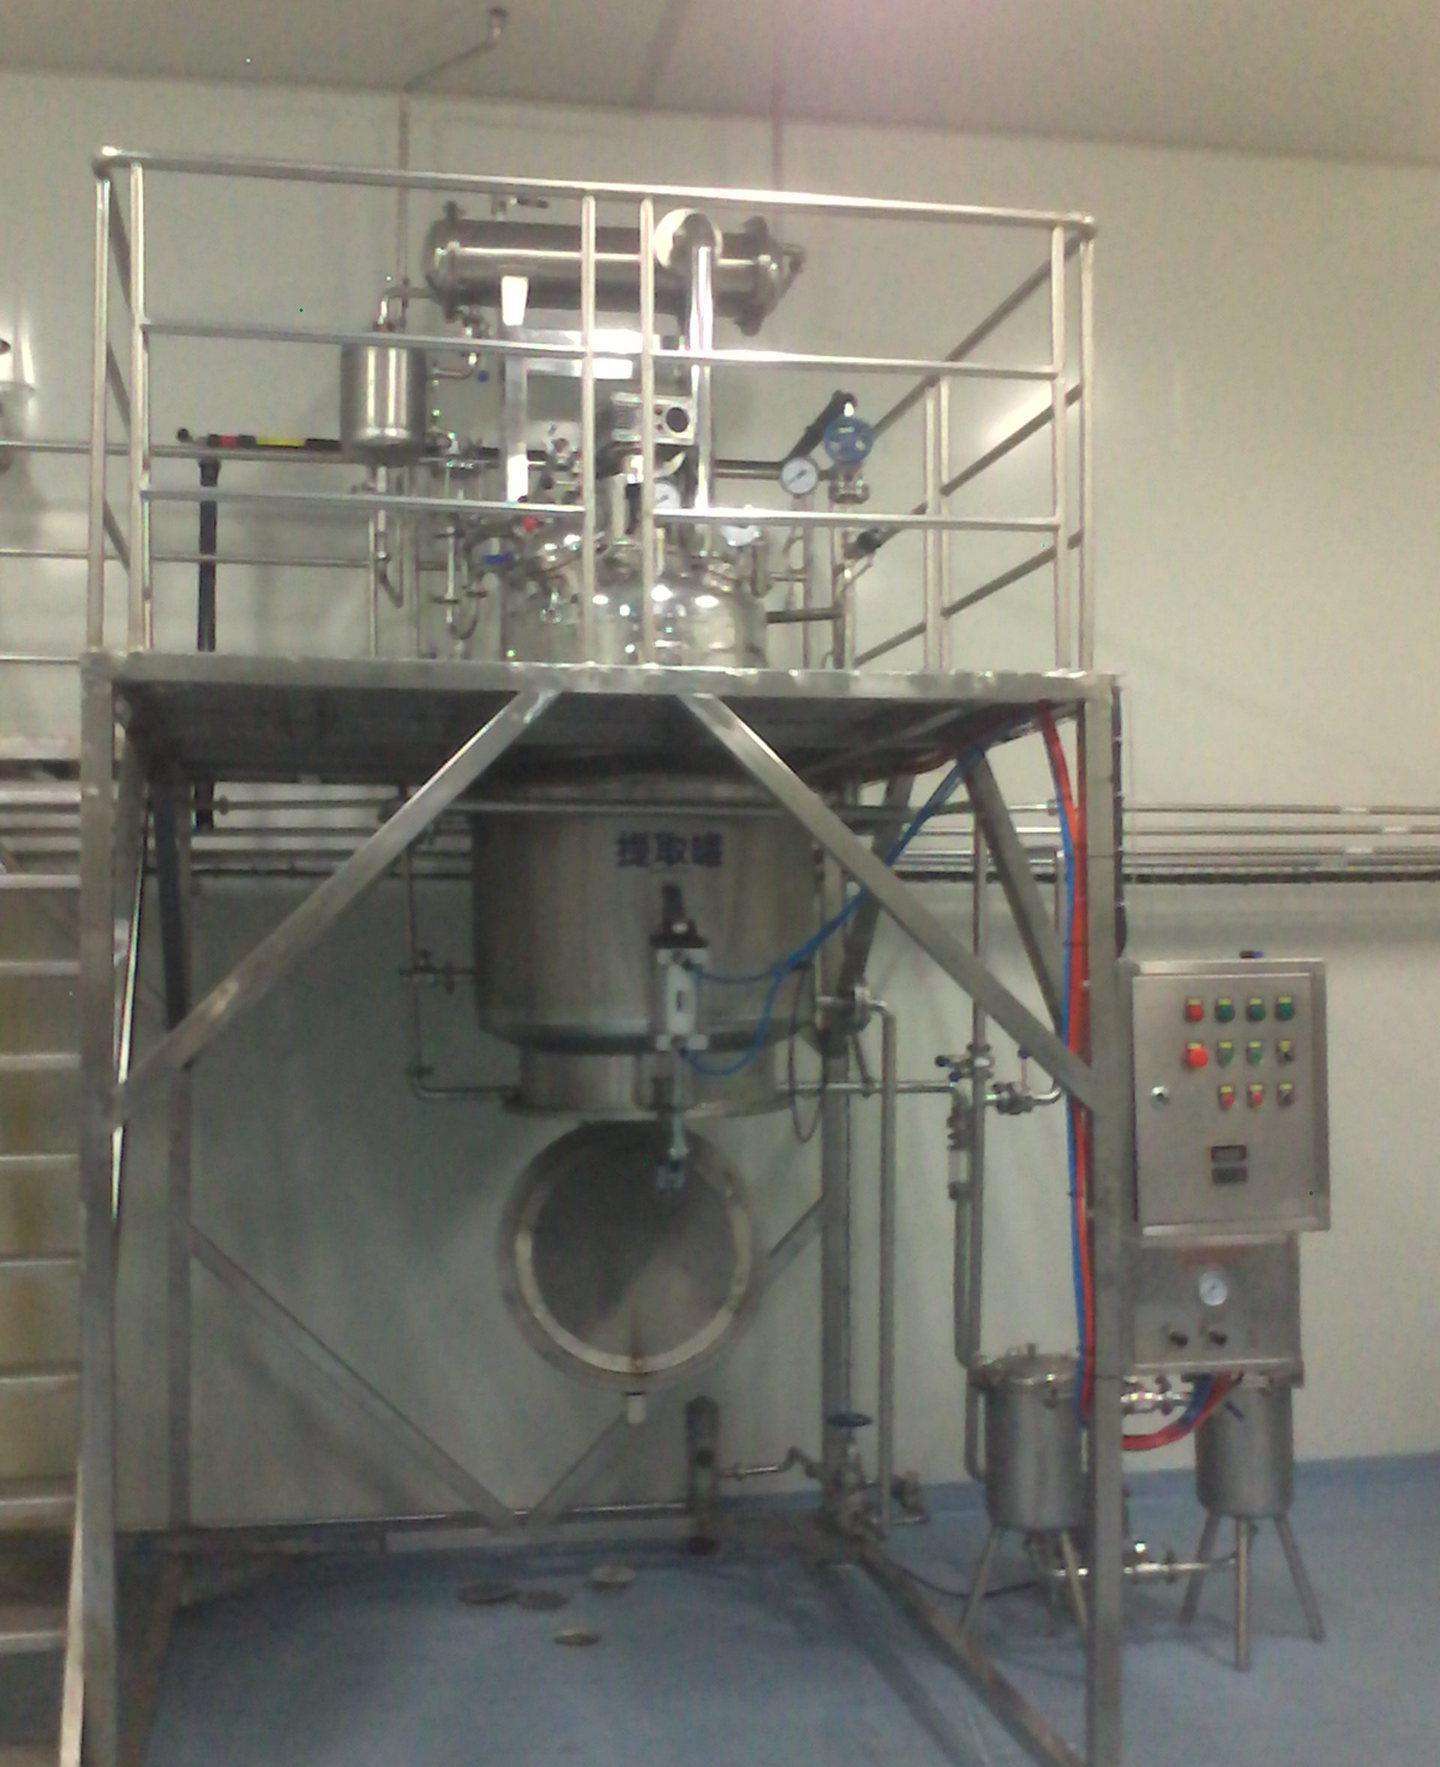 饮料生产线-茶饮料的生产工艺流程